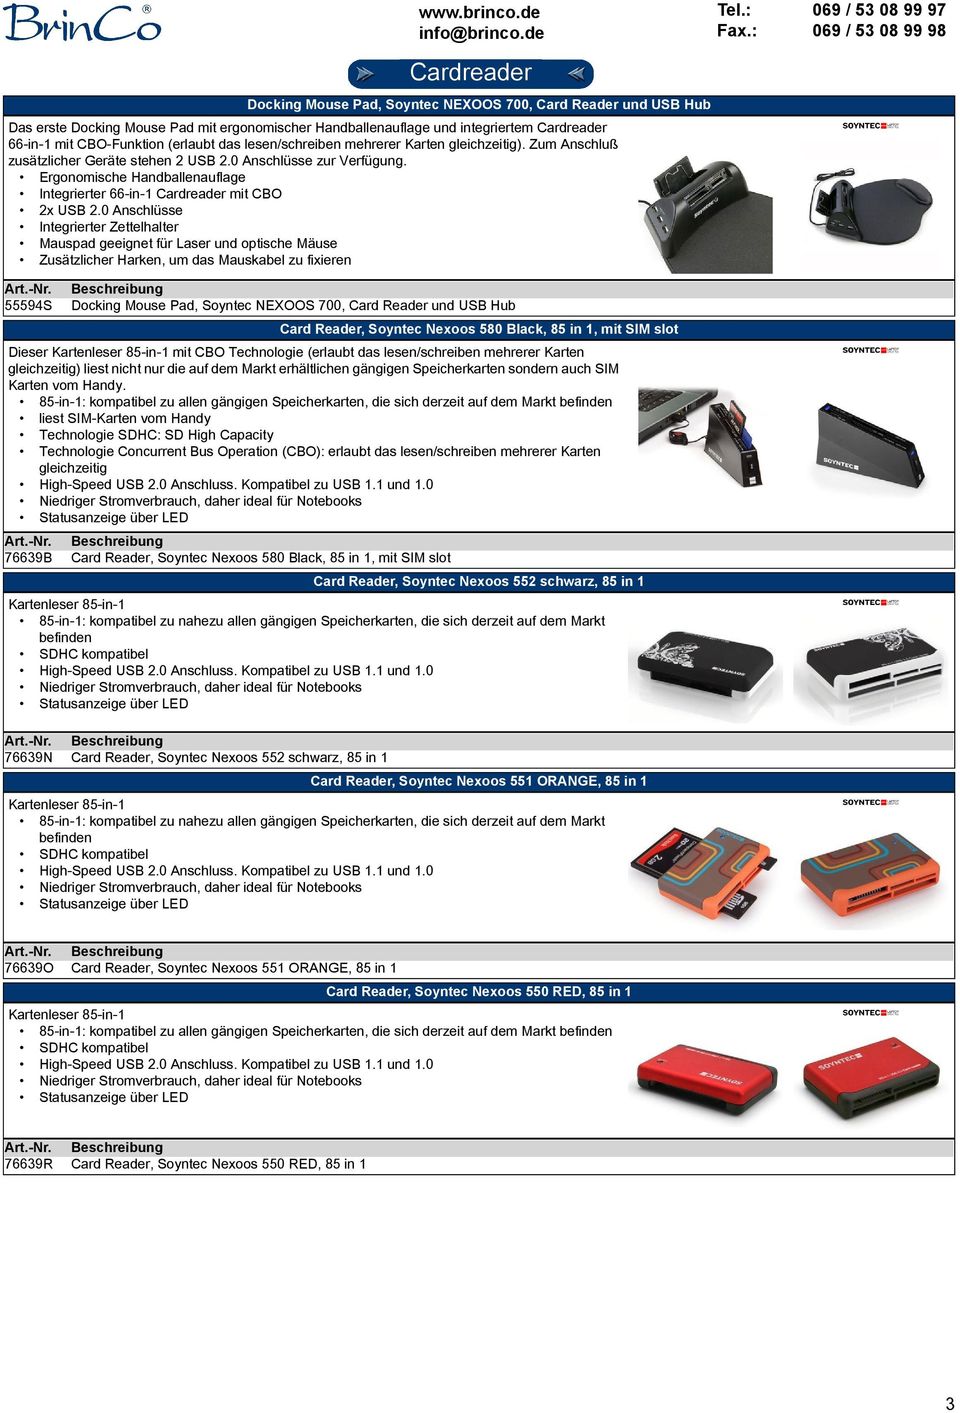 Ergonomische Handballenauflage Integrierter 66-in-1 Cardreader mit CBO 2x USB 2.